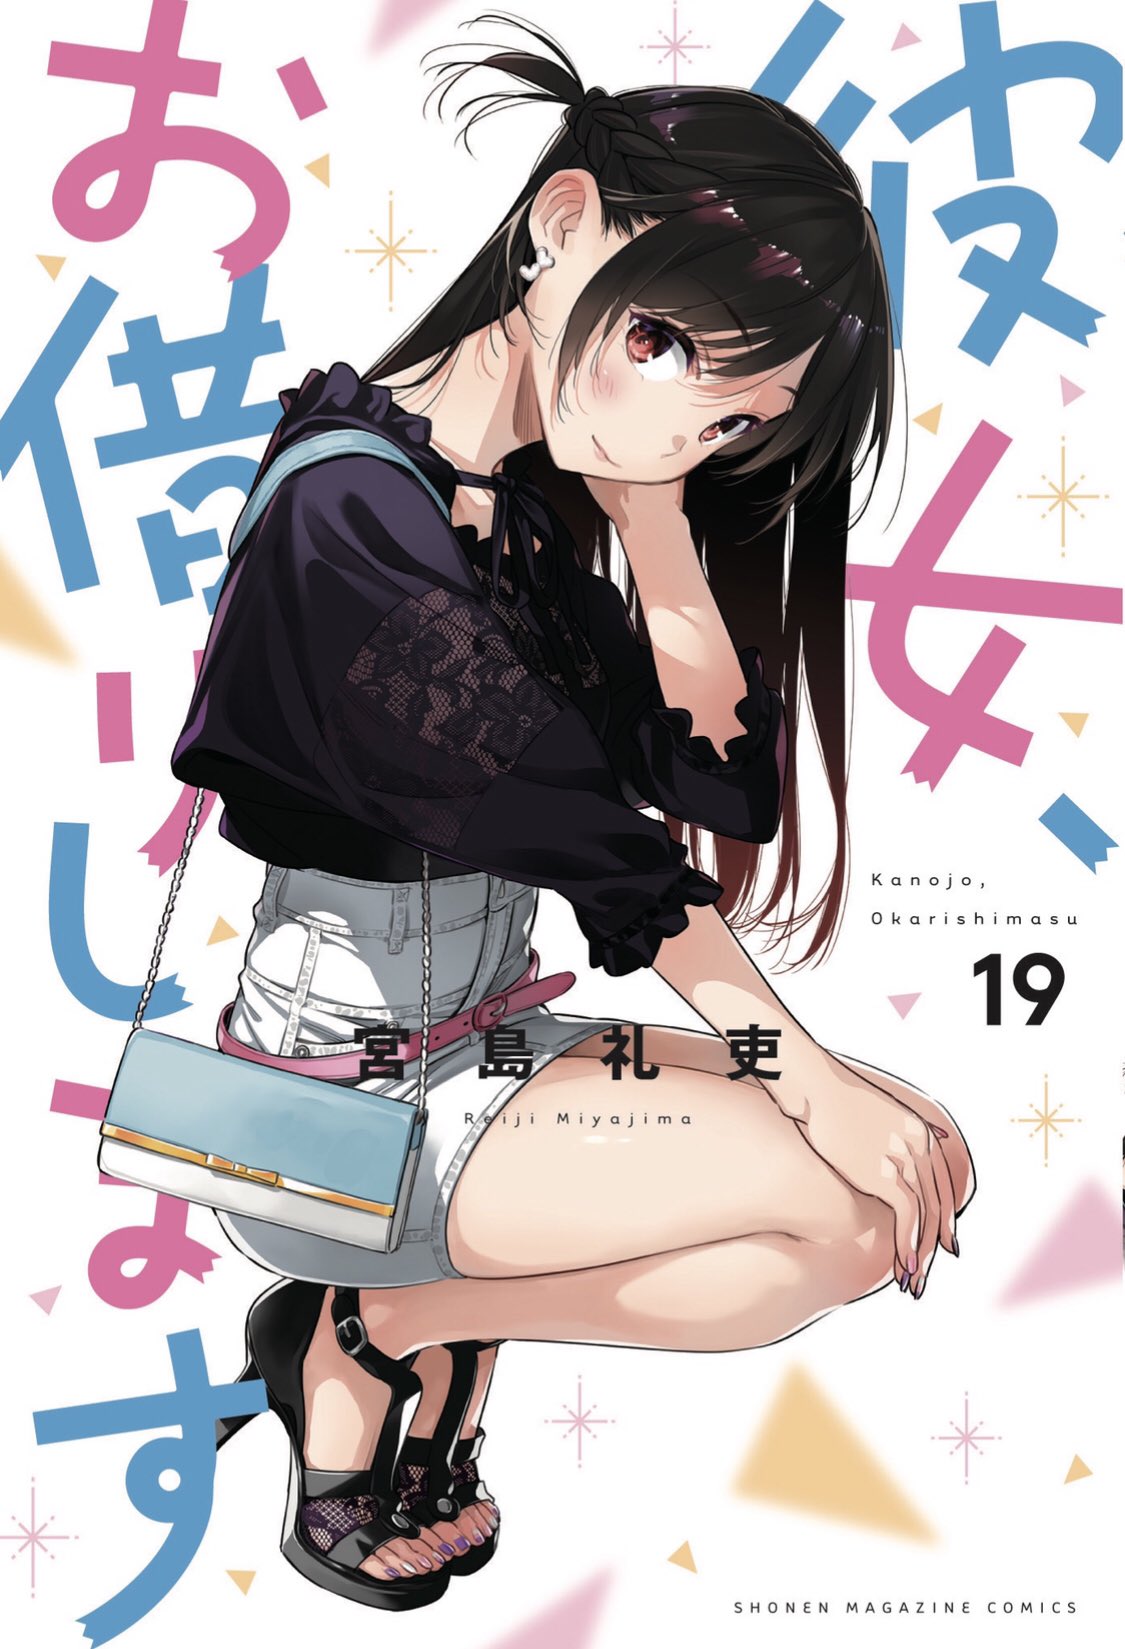 Rental Girlfriend Manga Erreicht Gesamtauflage Sieben Millionen 